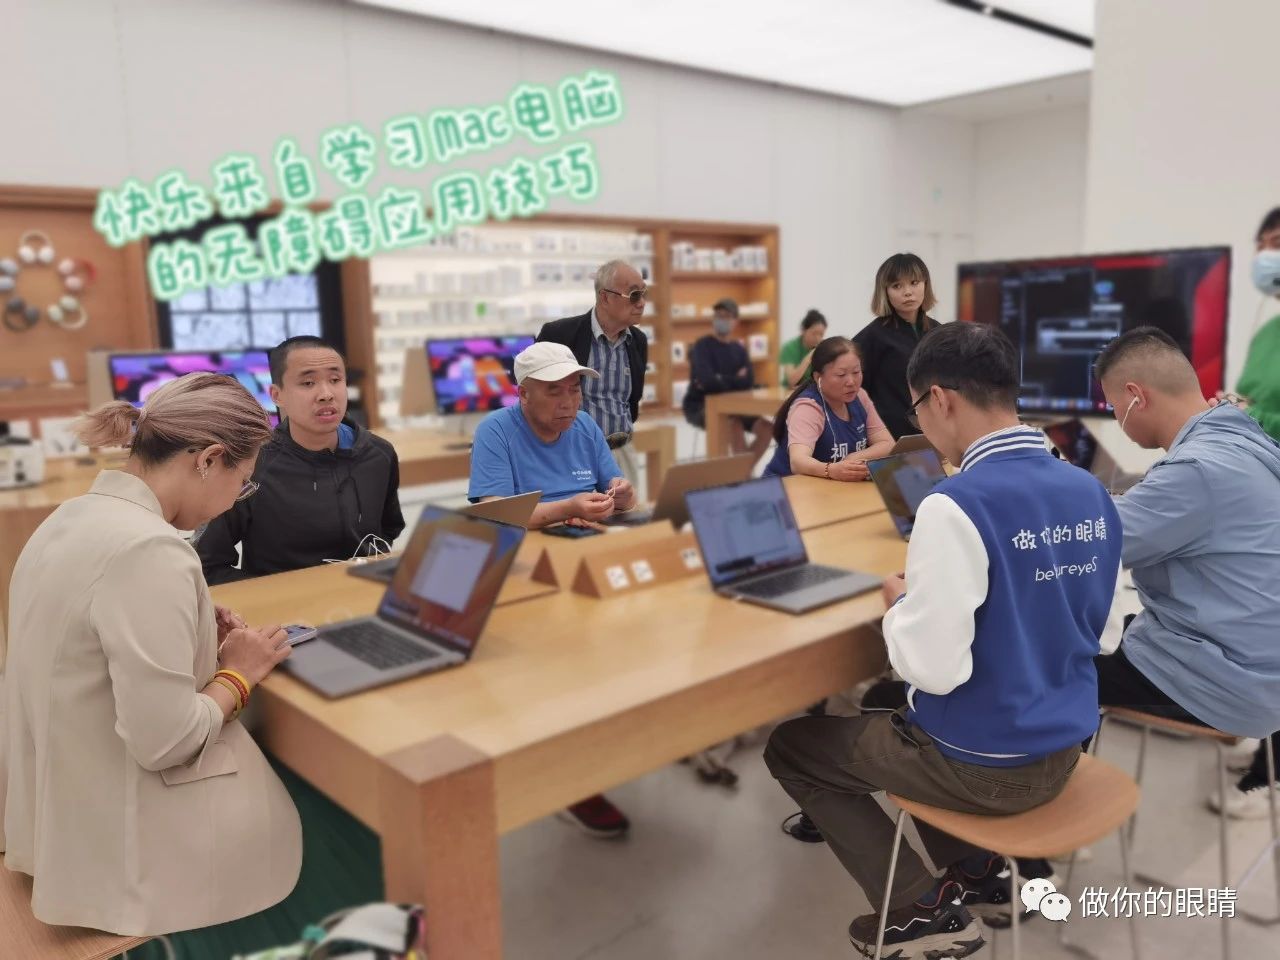 在门店认真听讲和实践的蓝睛灵视障伙伴们 Lanjingling members learning and practicing at Apple store